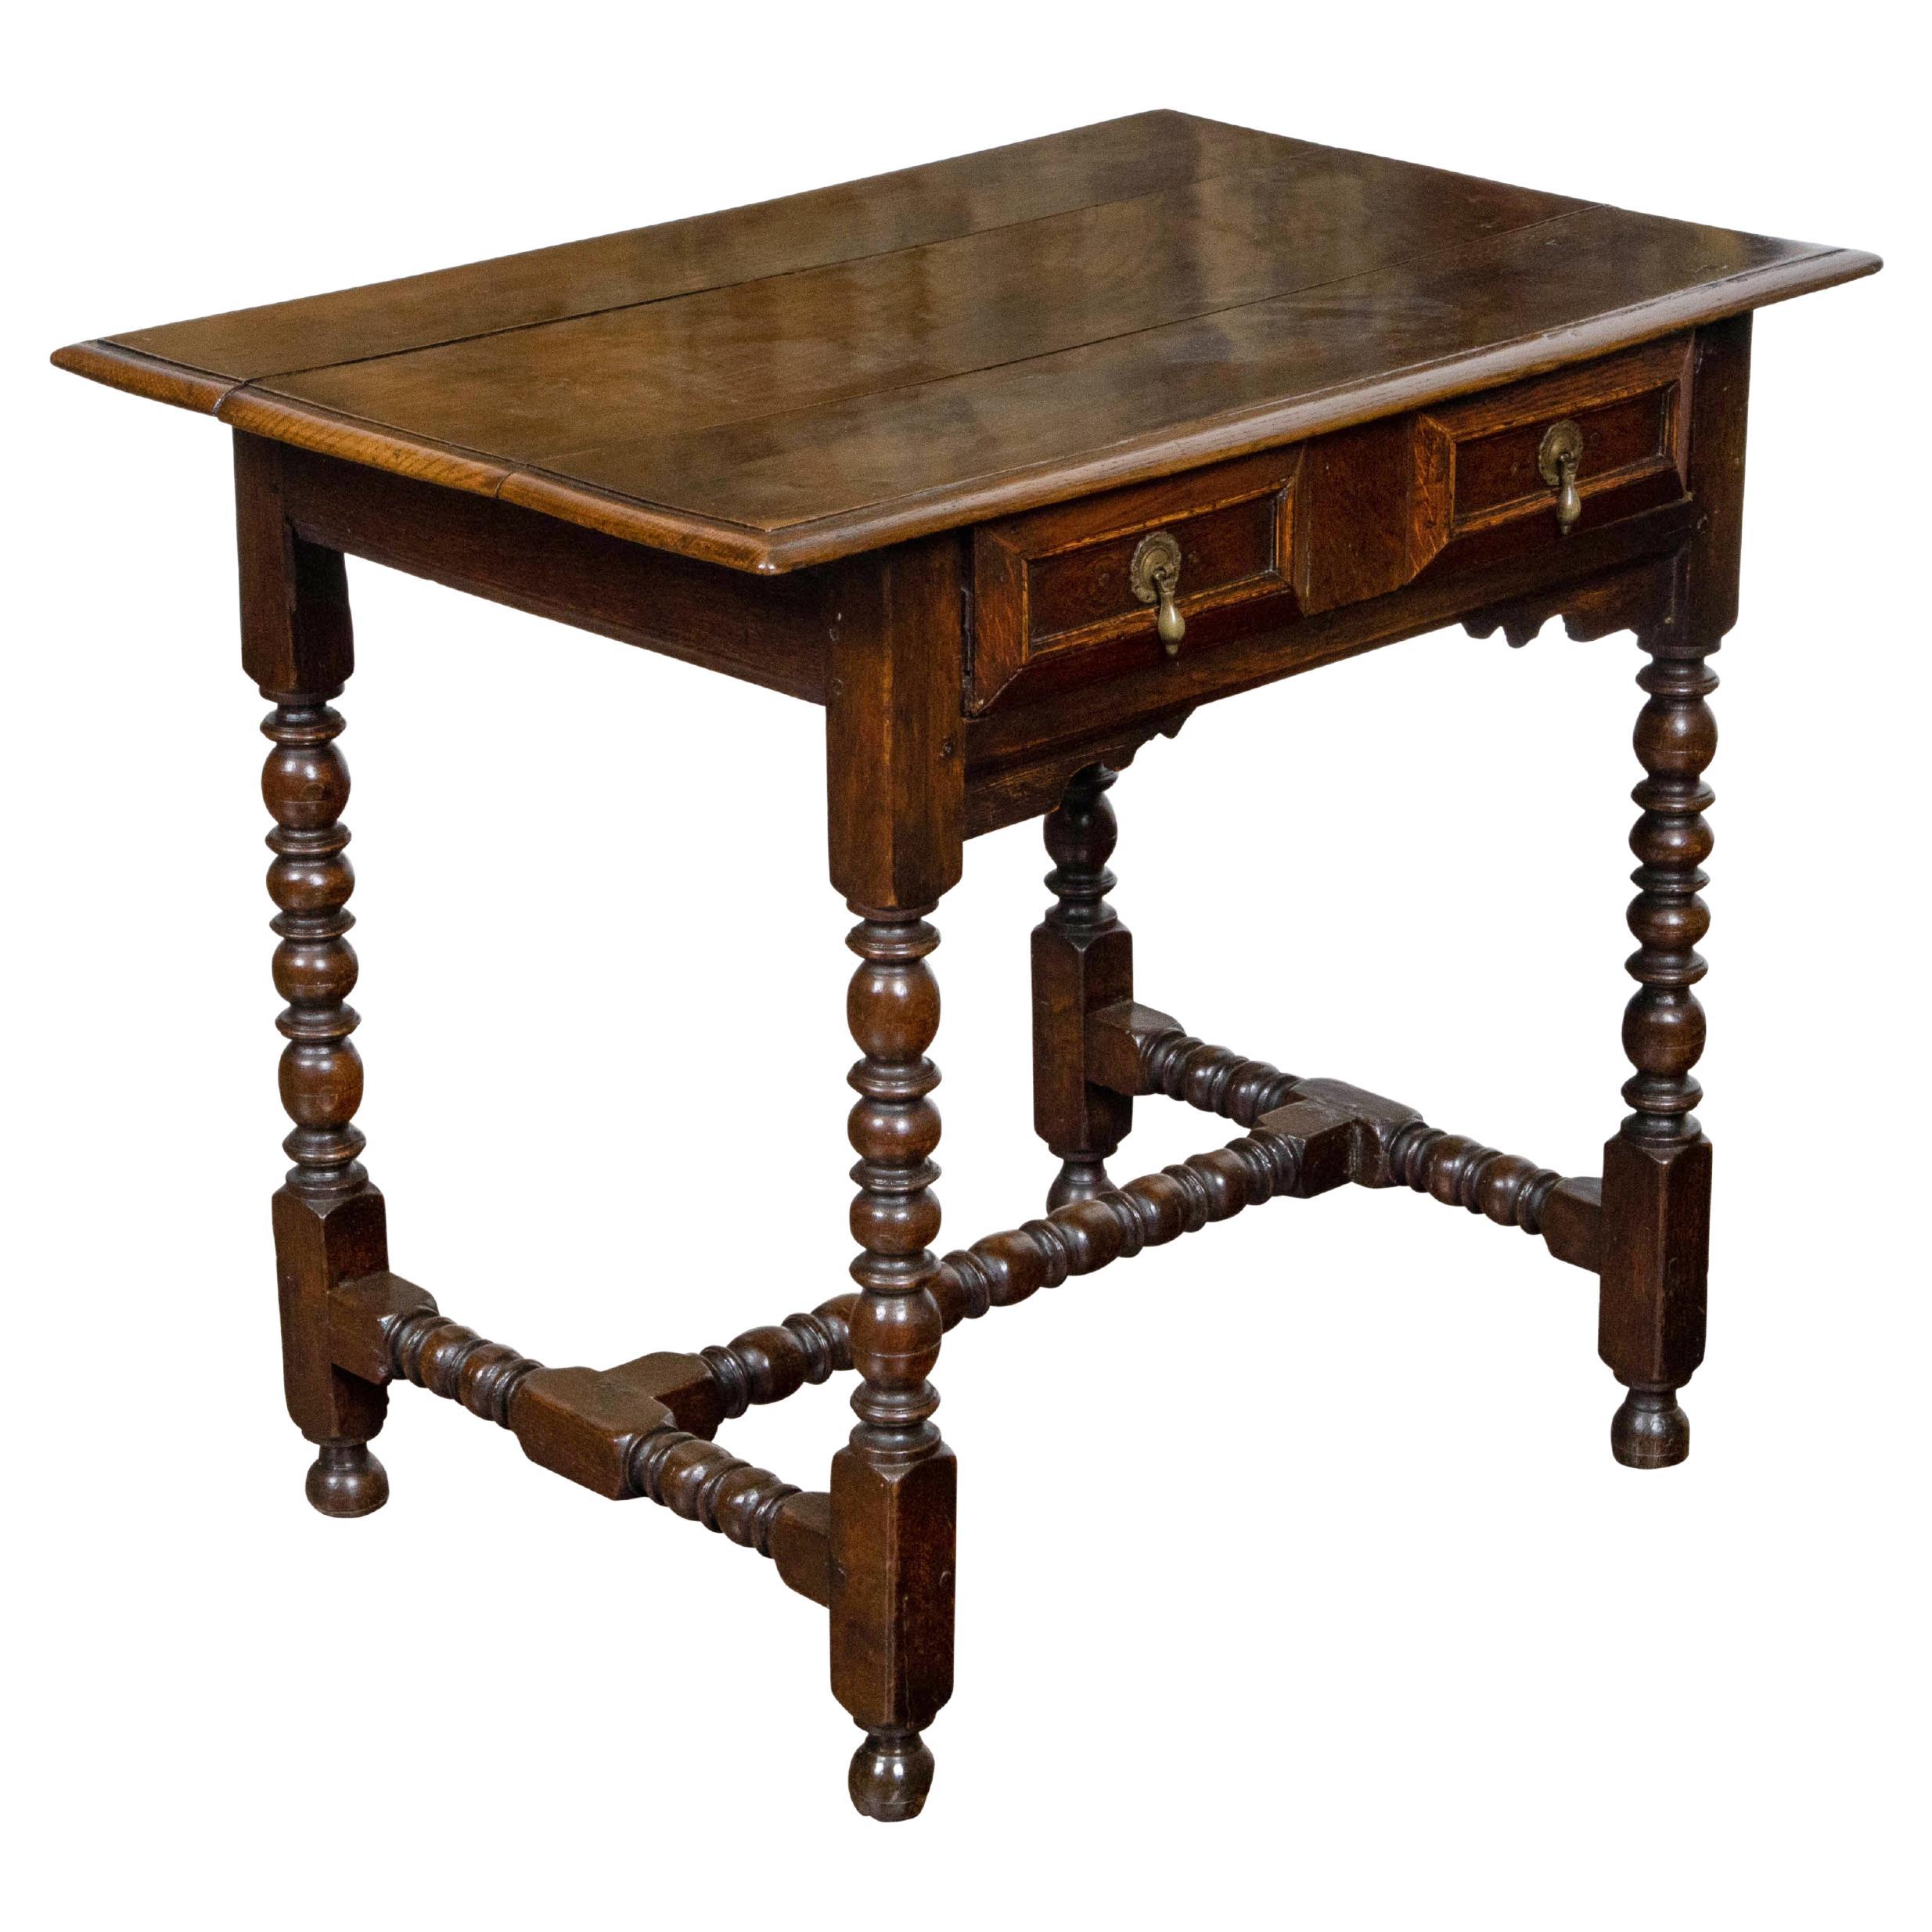 Table d'appoint en chêne anglais du 19ème siècle avec tiroir à police géométrique